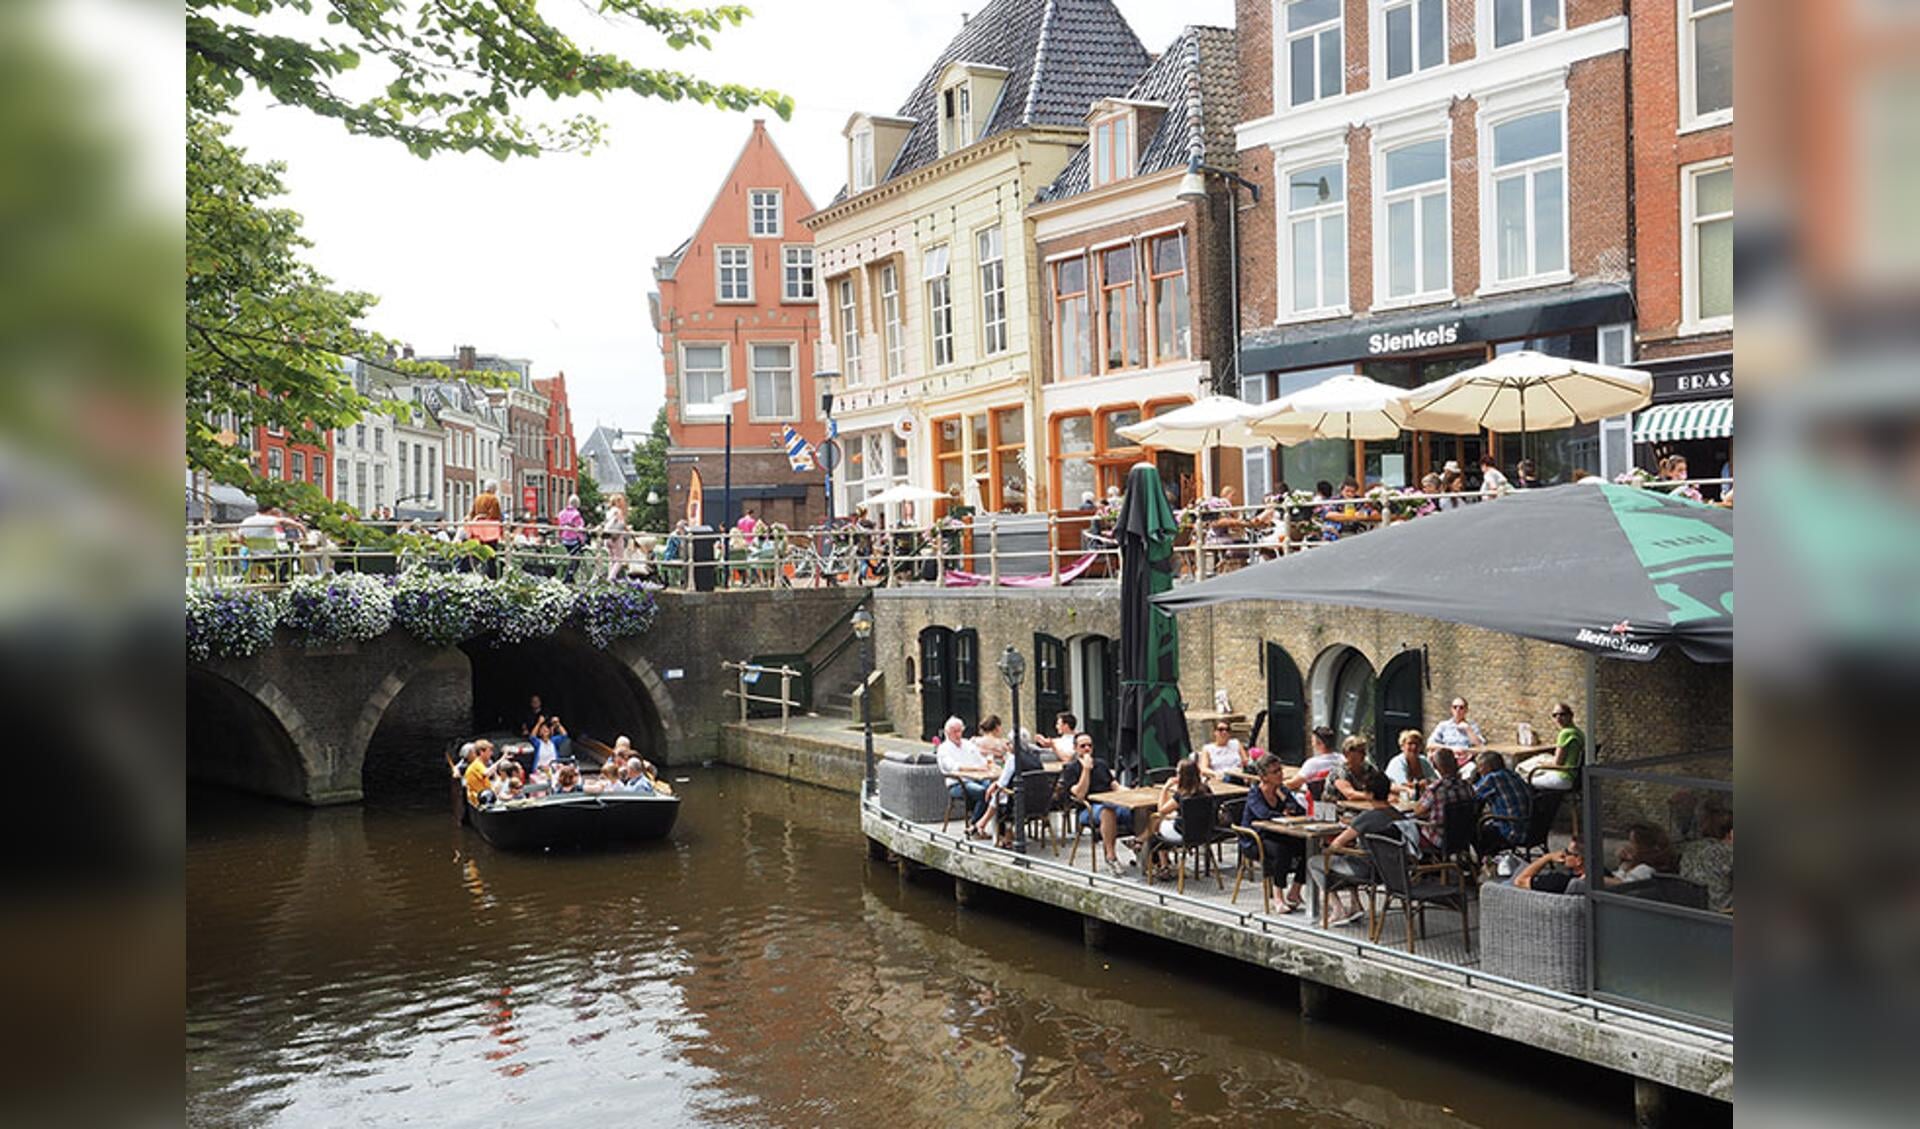 Sfeervol beeld van terrassen langs de grachten in de Leeuwarder binnenstad, gemaakt in 2016.